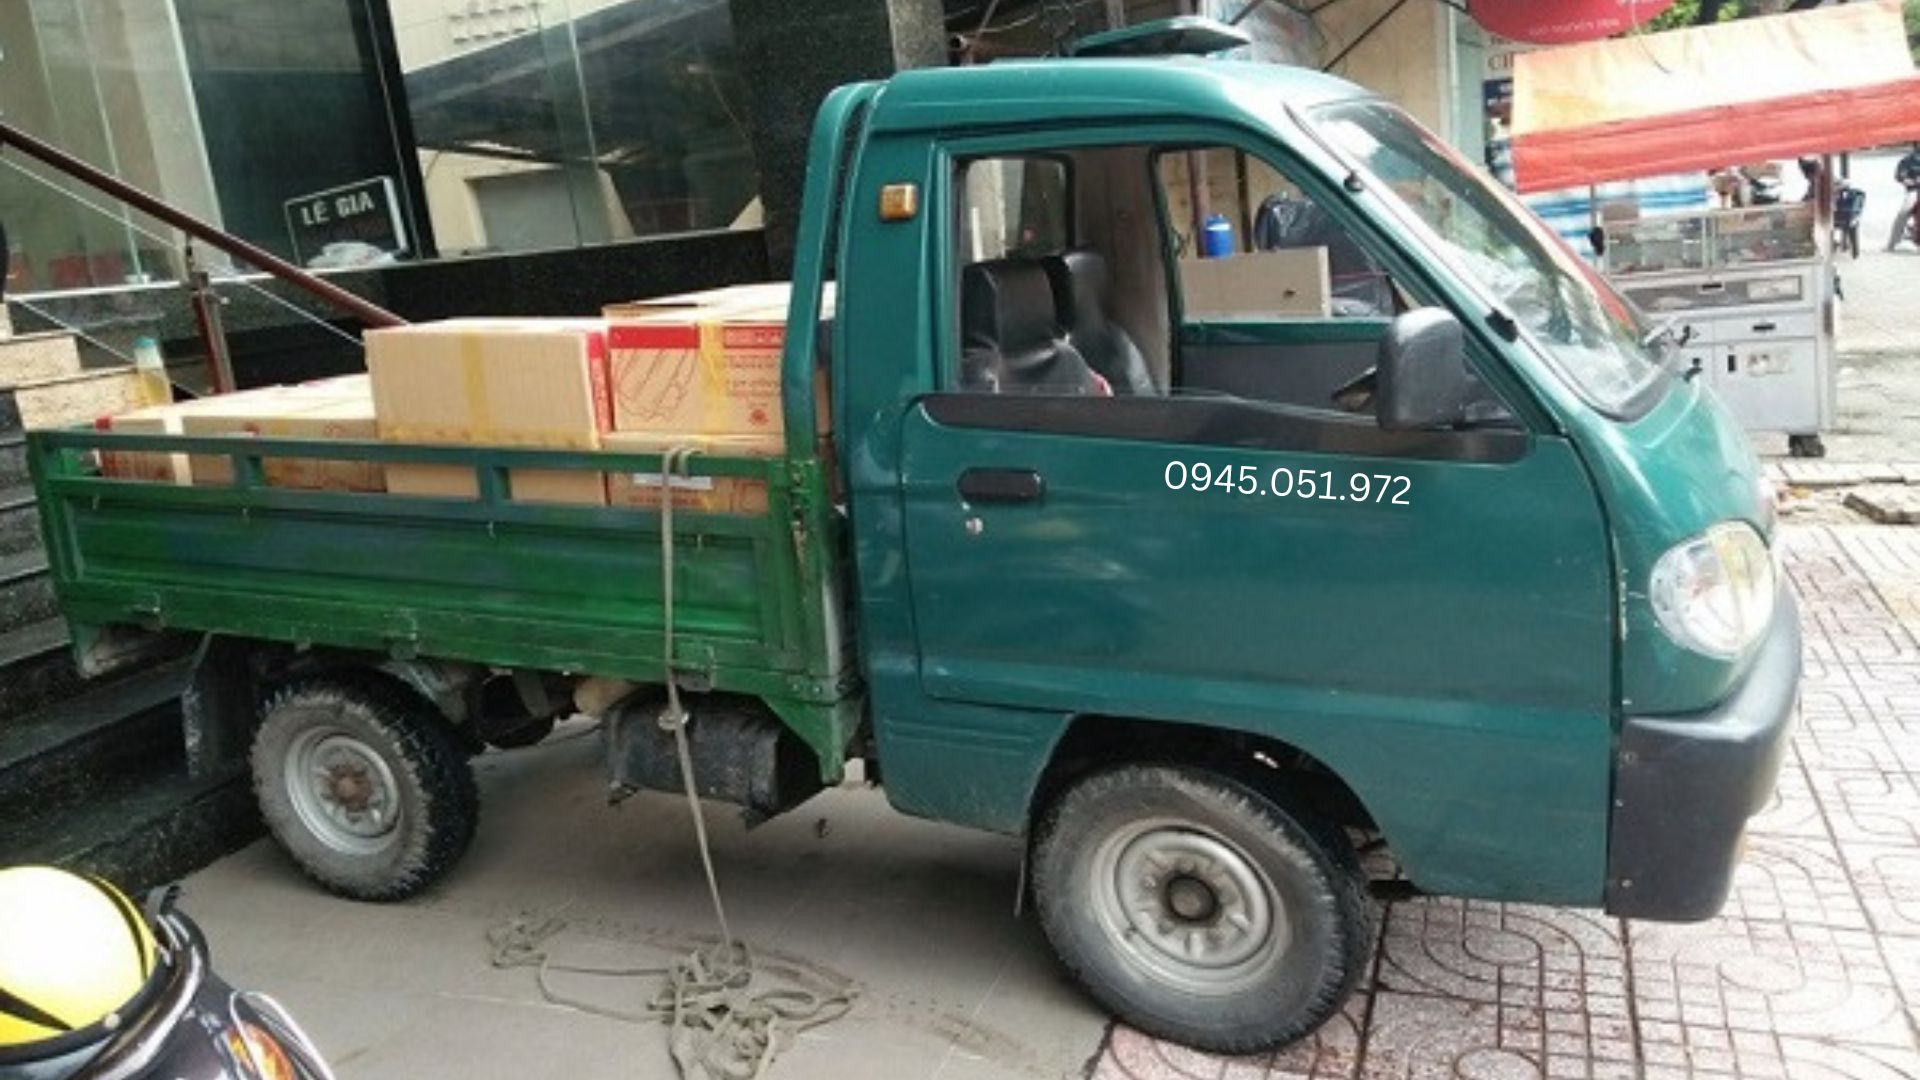 Taxi tải Minh Tuấn - Đơn vị chuyển trọ Đà Nẵng nổi tiếng